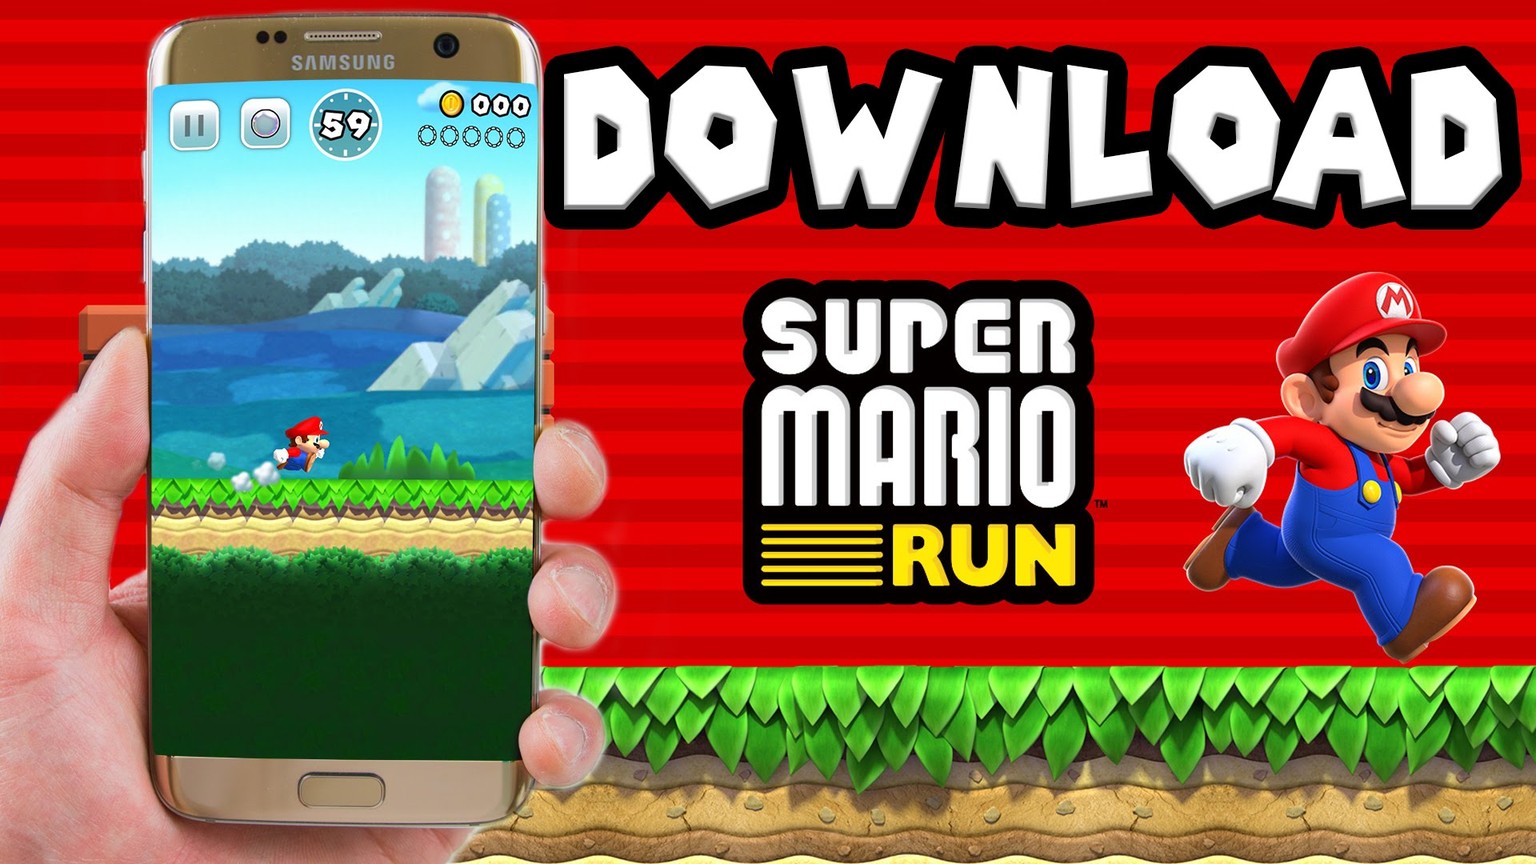 «Super Mario Run» kommt zuerst auf das iPhone, später auch für Android-Smartphones.